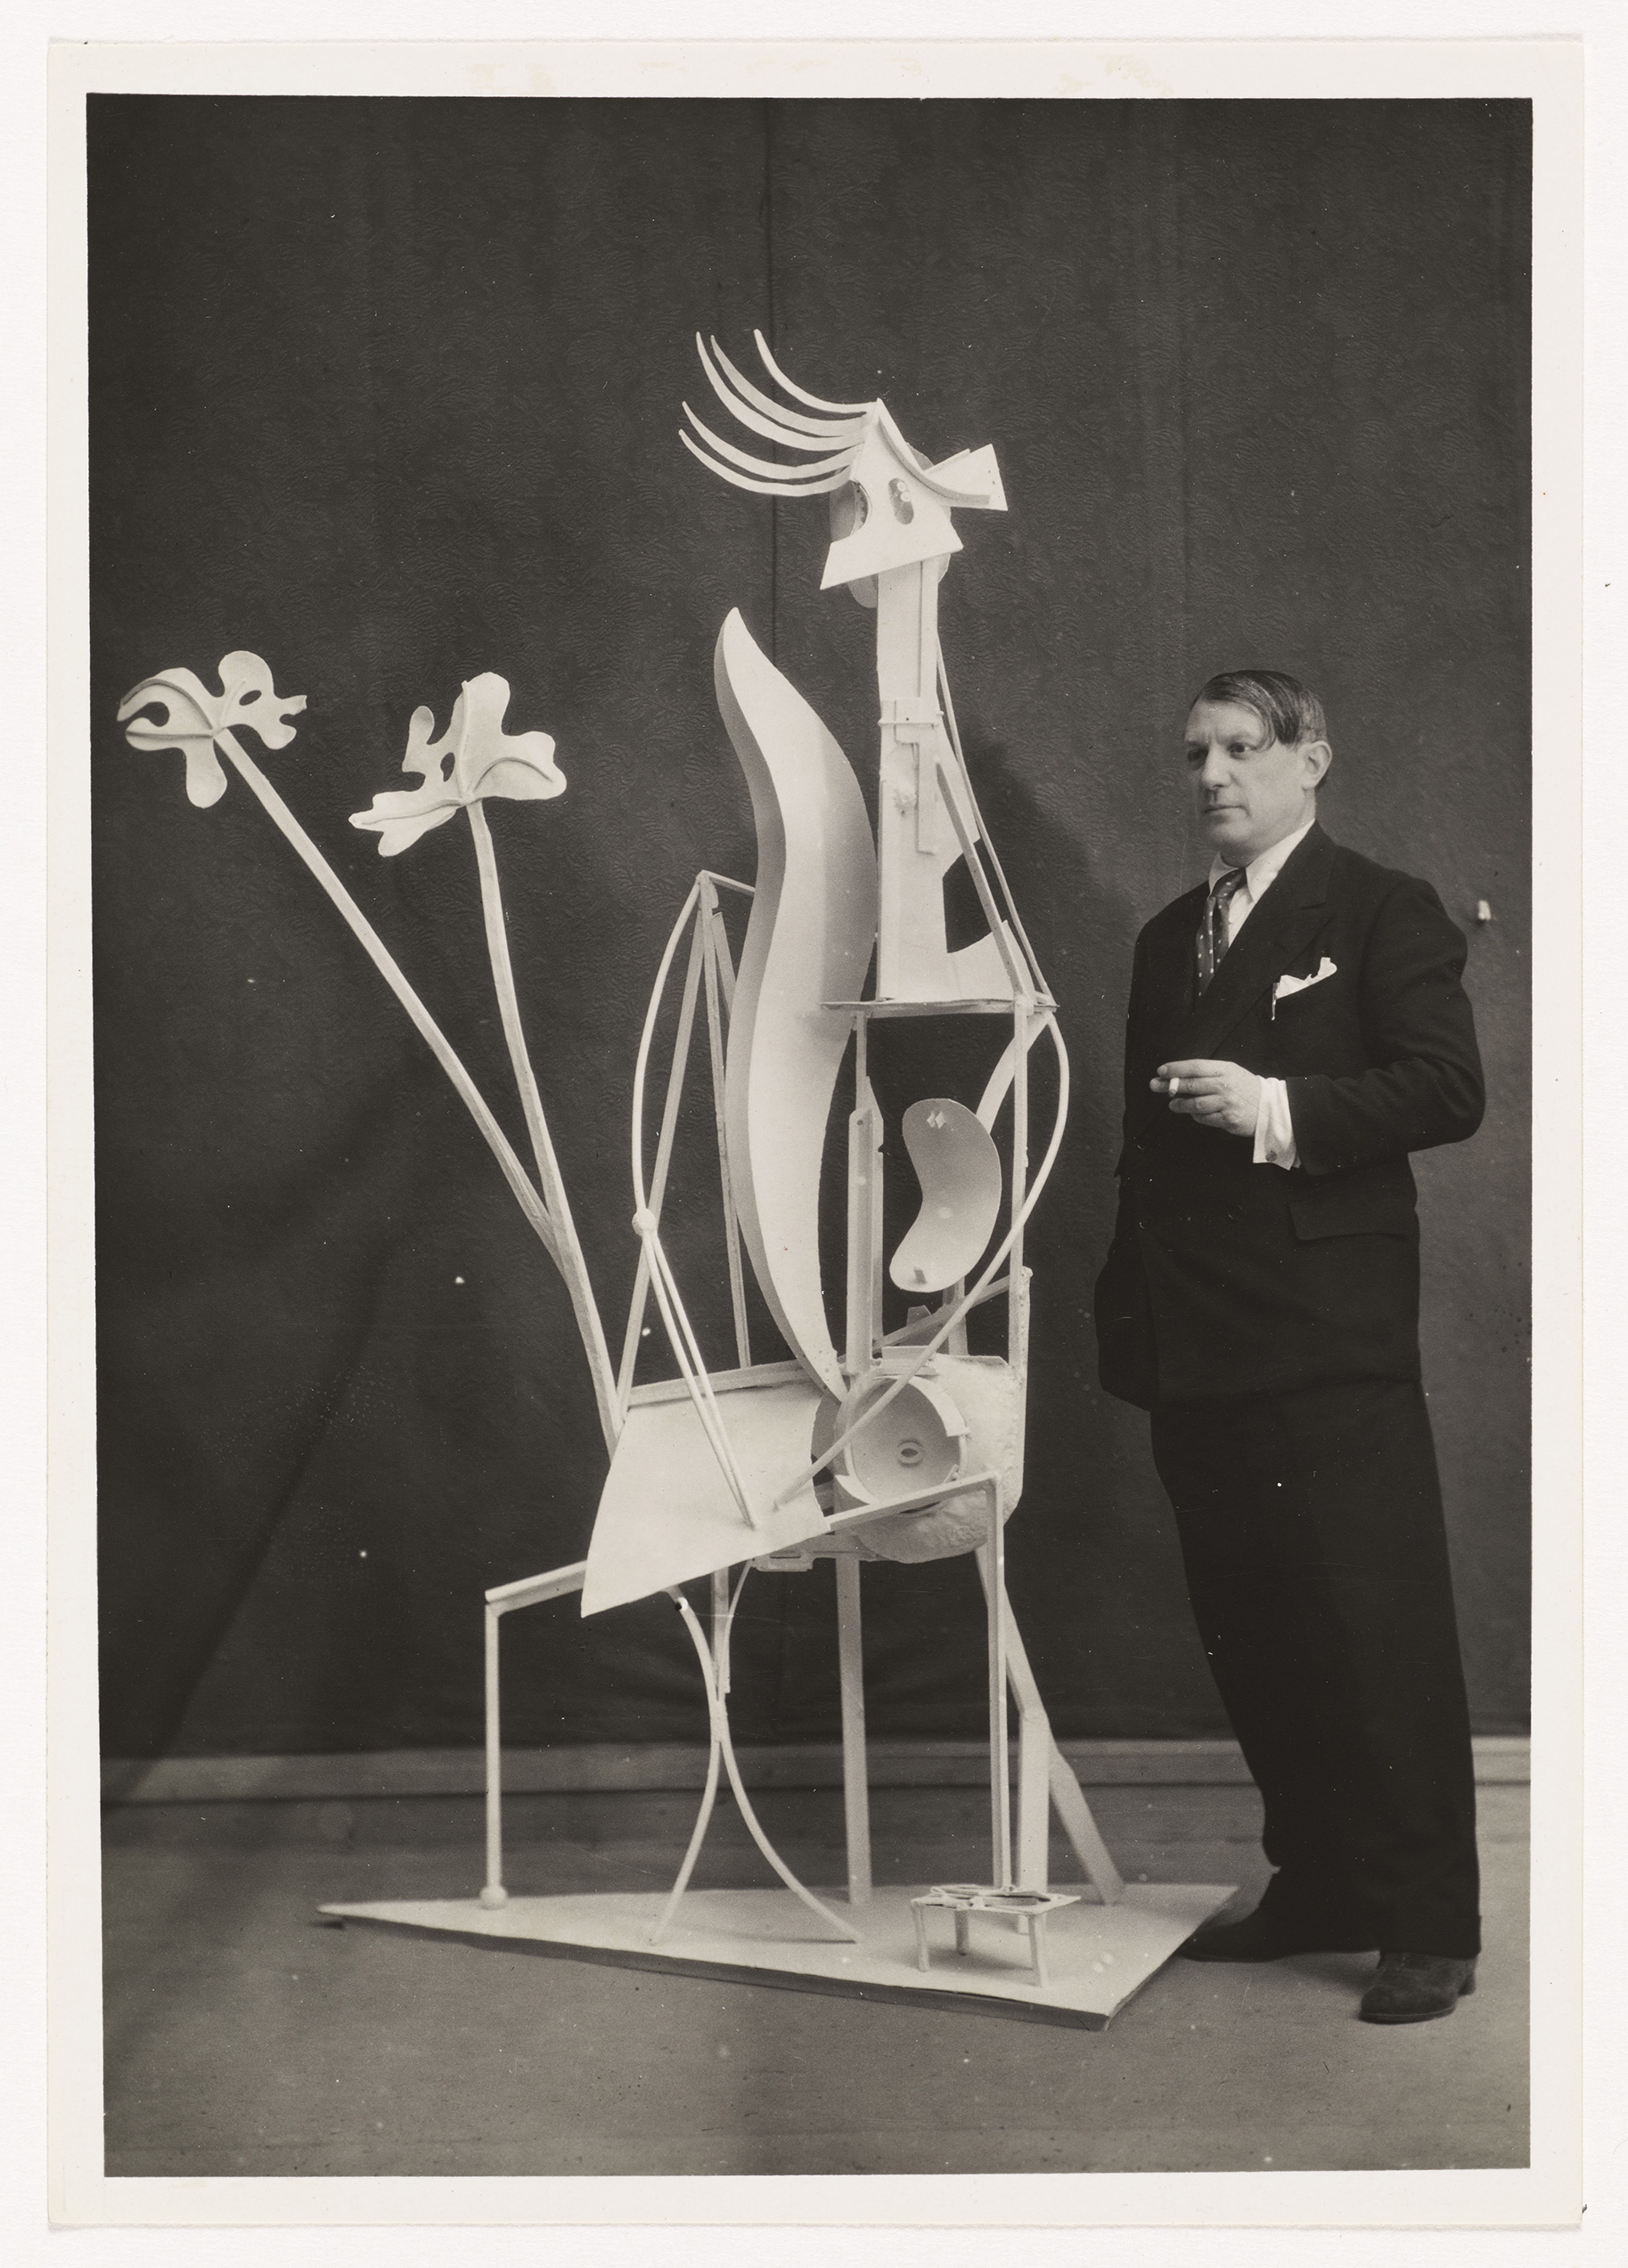 Anonyme - Picasso devant la sculpture "La femme au jardin" (MP267) lors de l'exposition du 16 juin au 30 juillet 1932 à la galerie Georges Petit - APPH6652 - 15-512798 